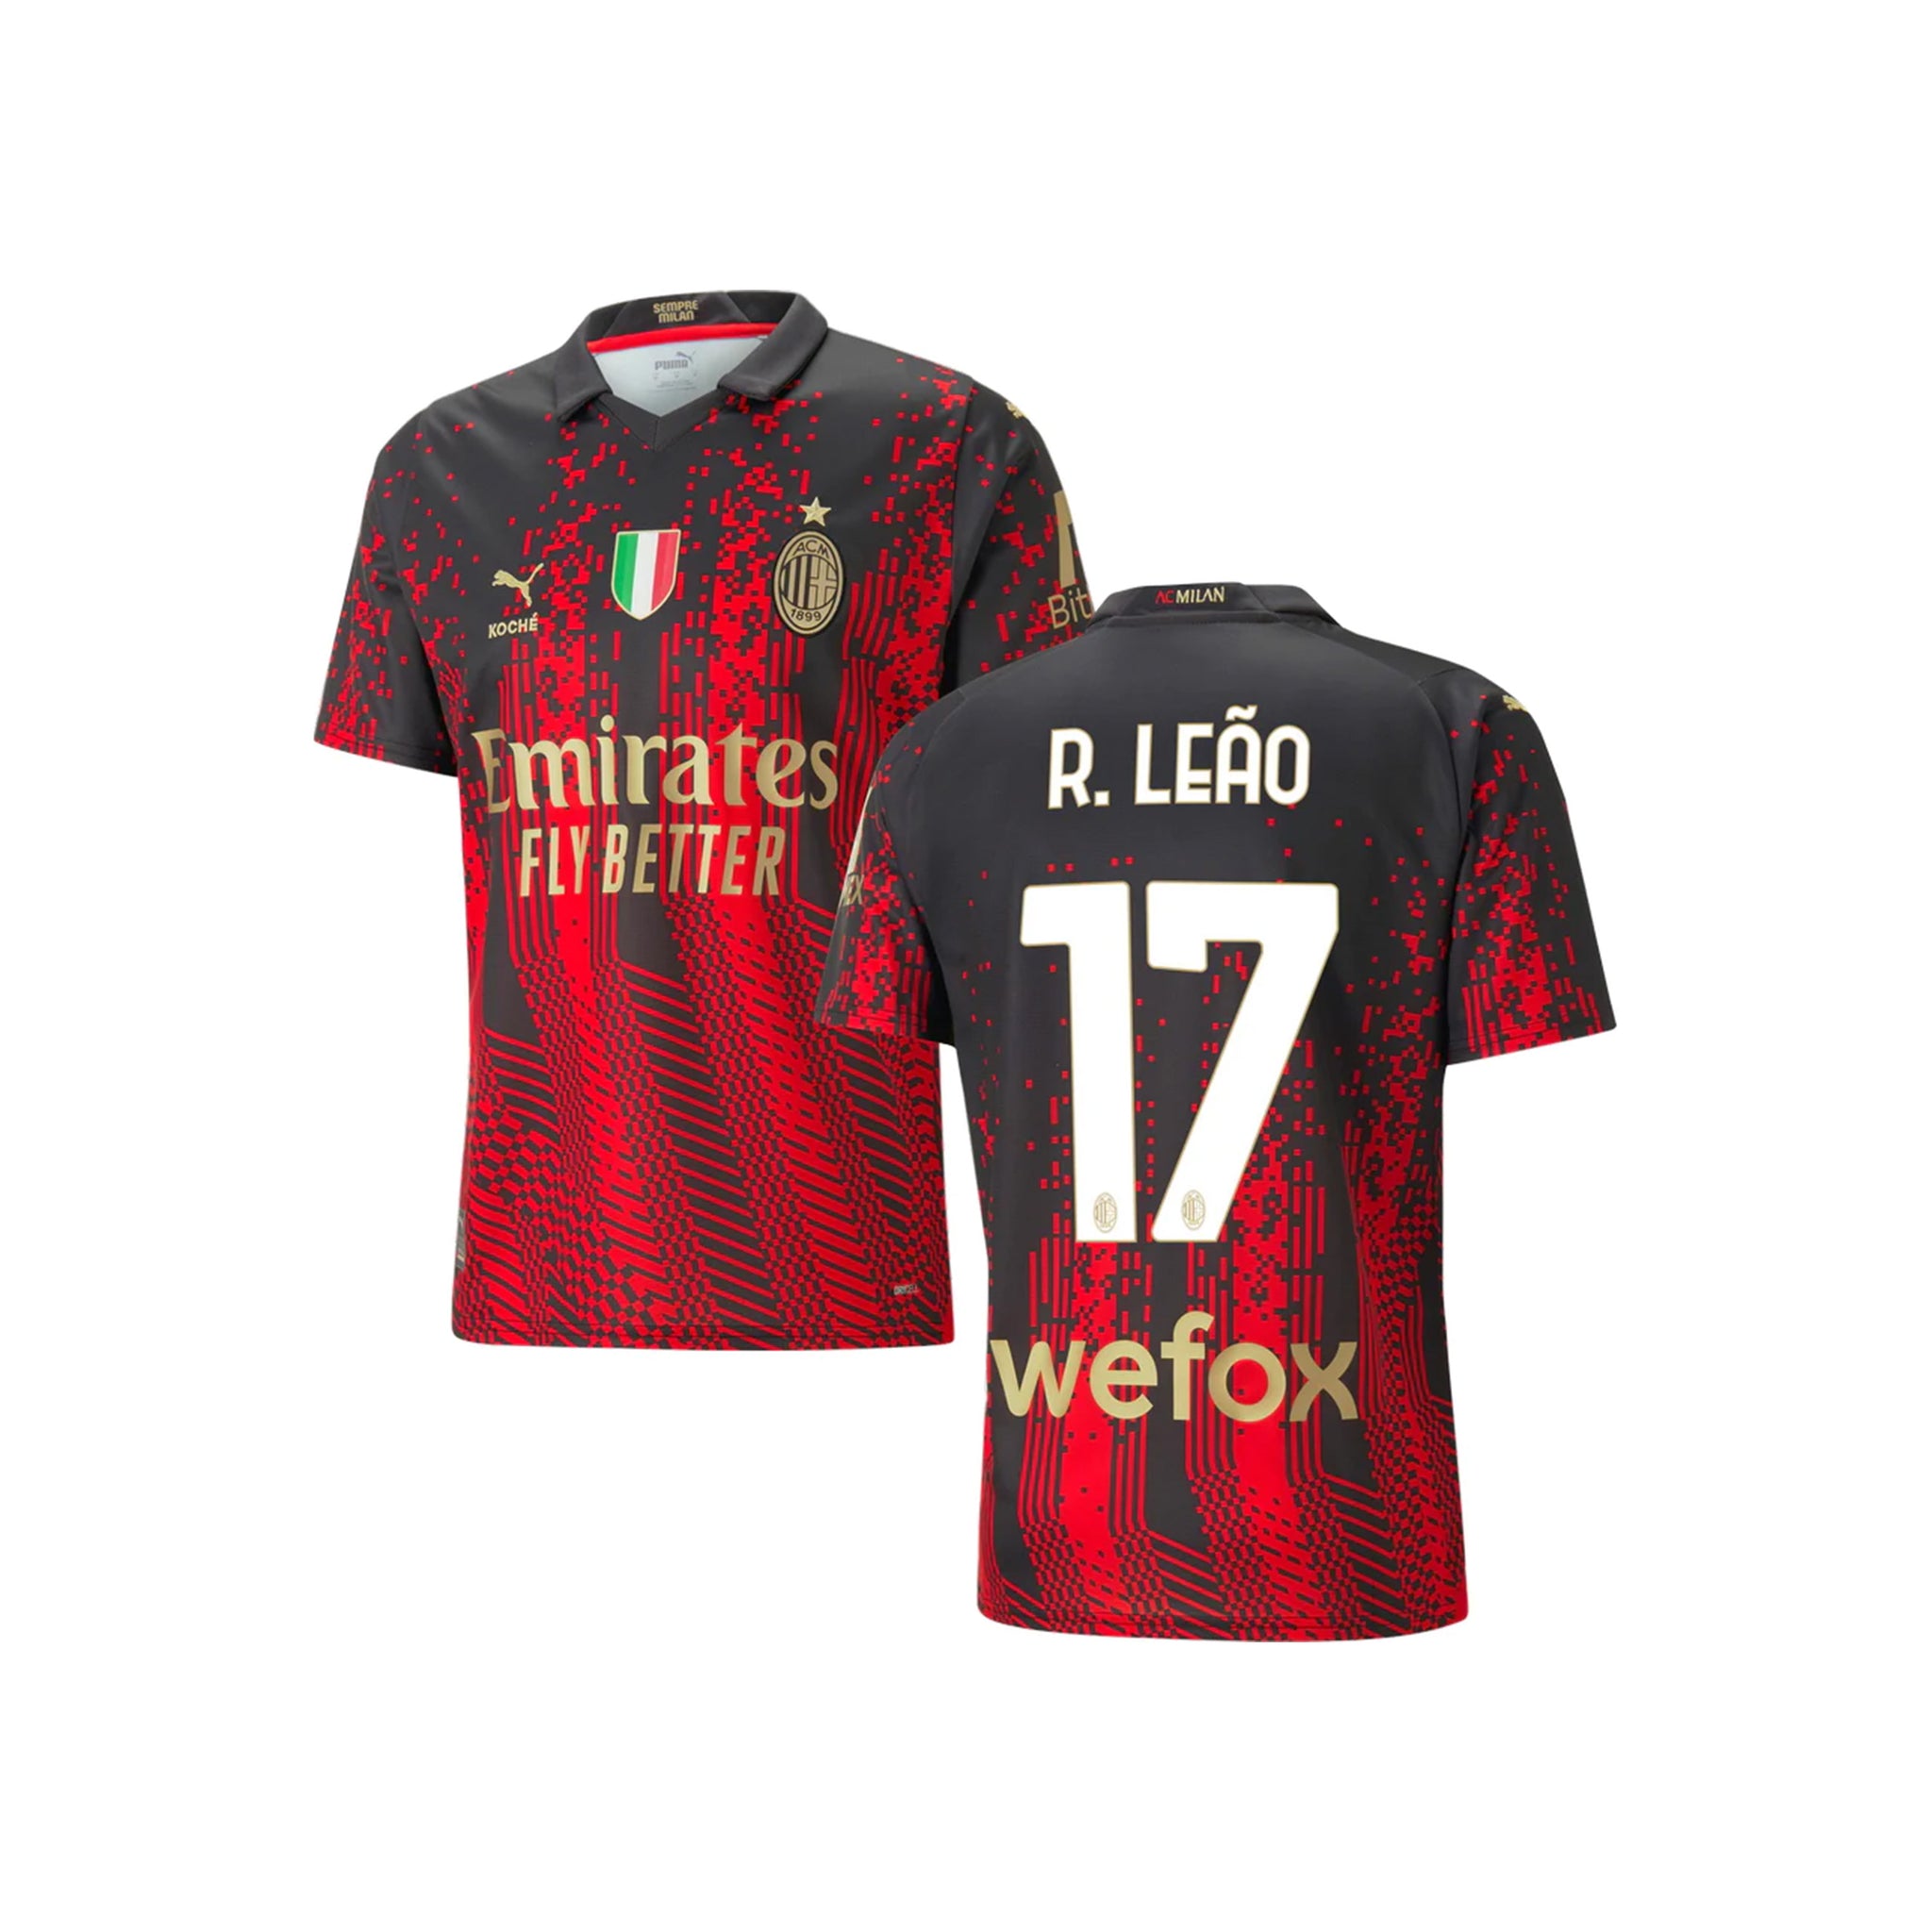 🔴⚫ El AC Milan presentó su cuarta camiseta 22/23 x @pumafootball, en  colaboración con Koché. ¿👍🏻 o 👎🏻?